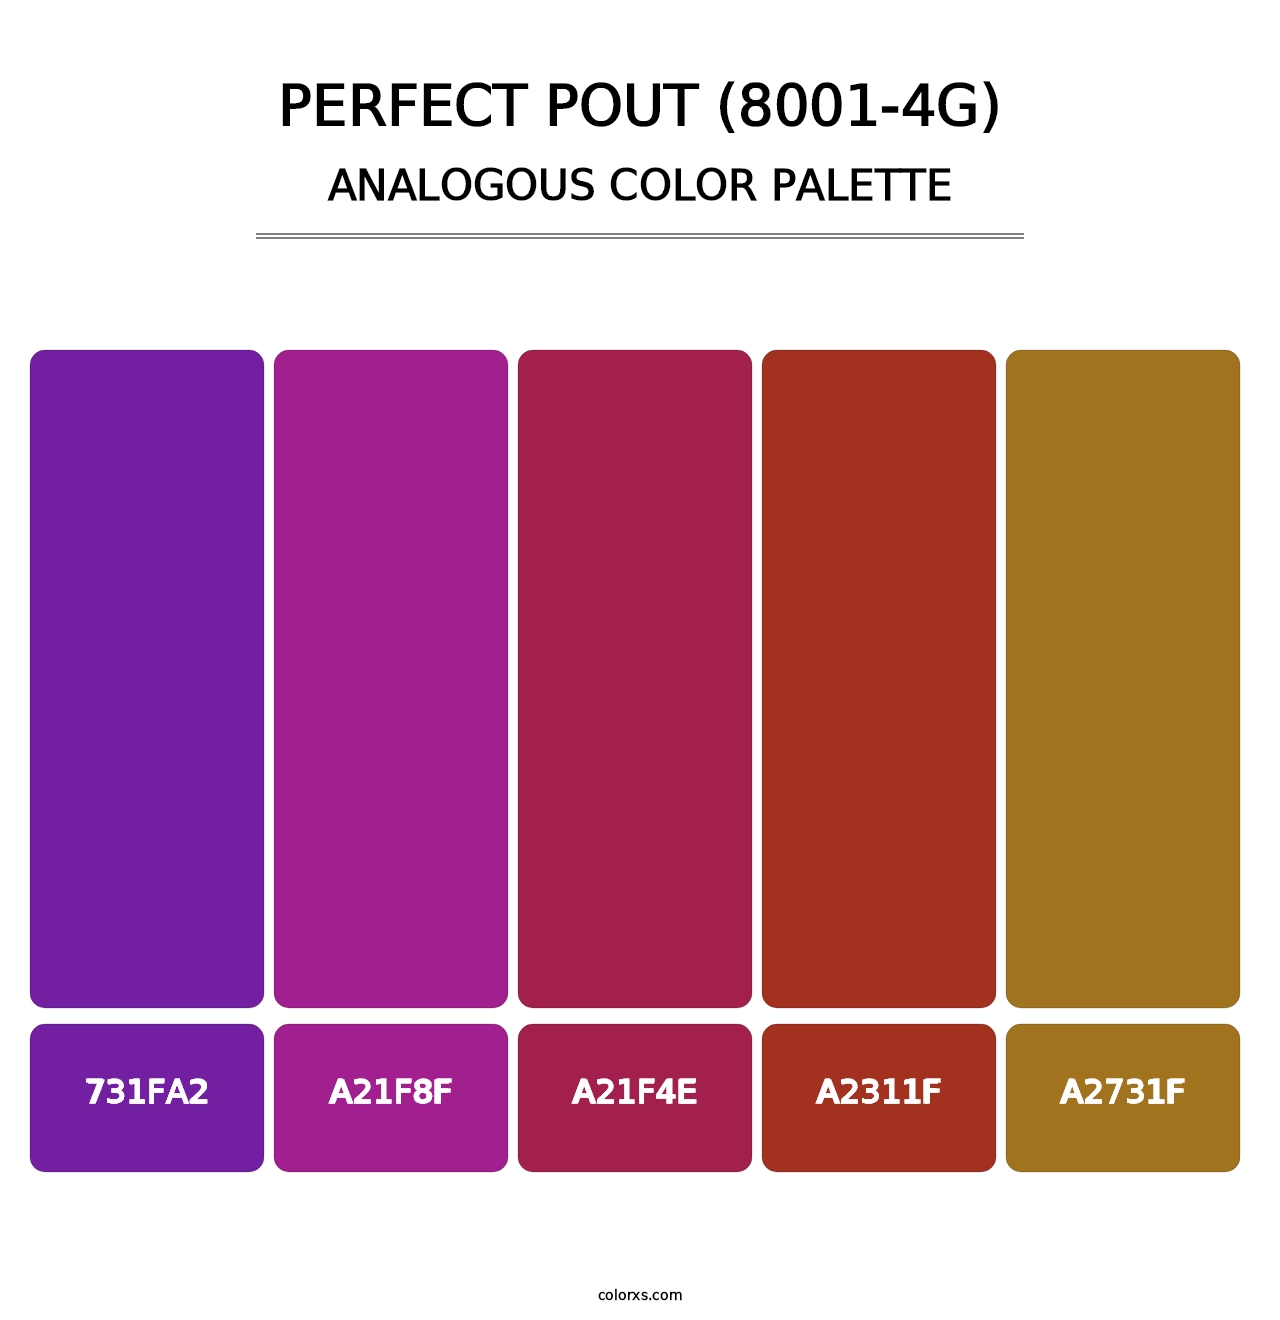 Perfect Pout (8001-4G) - Analogous Color Palette